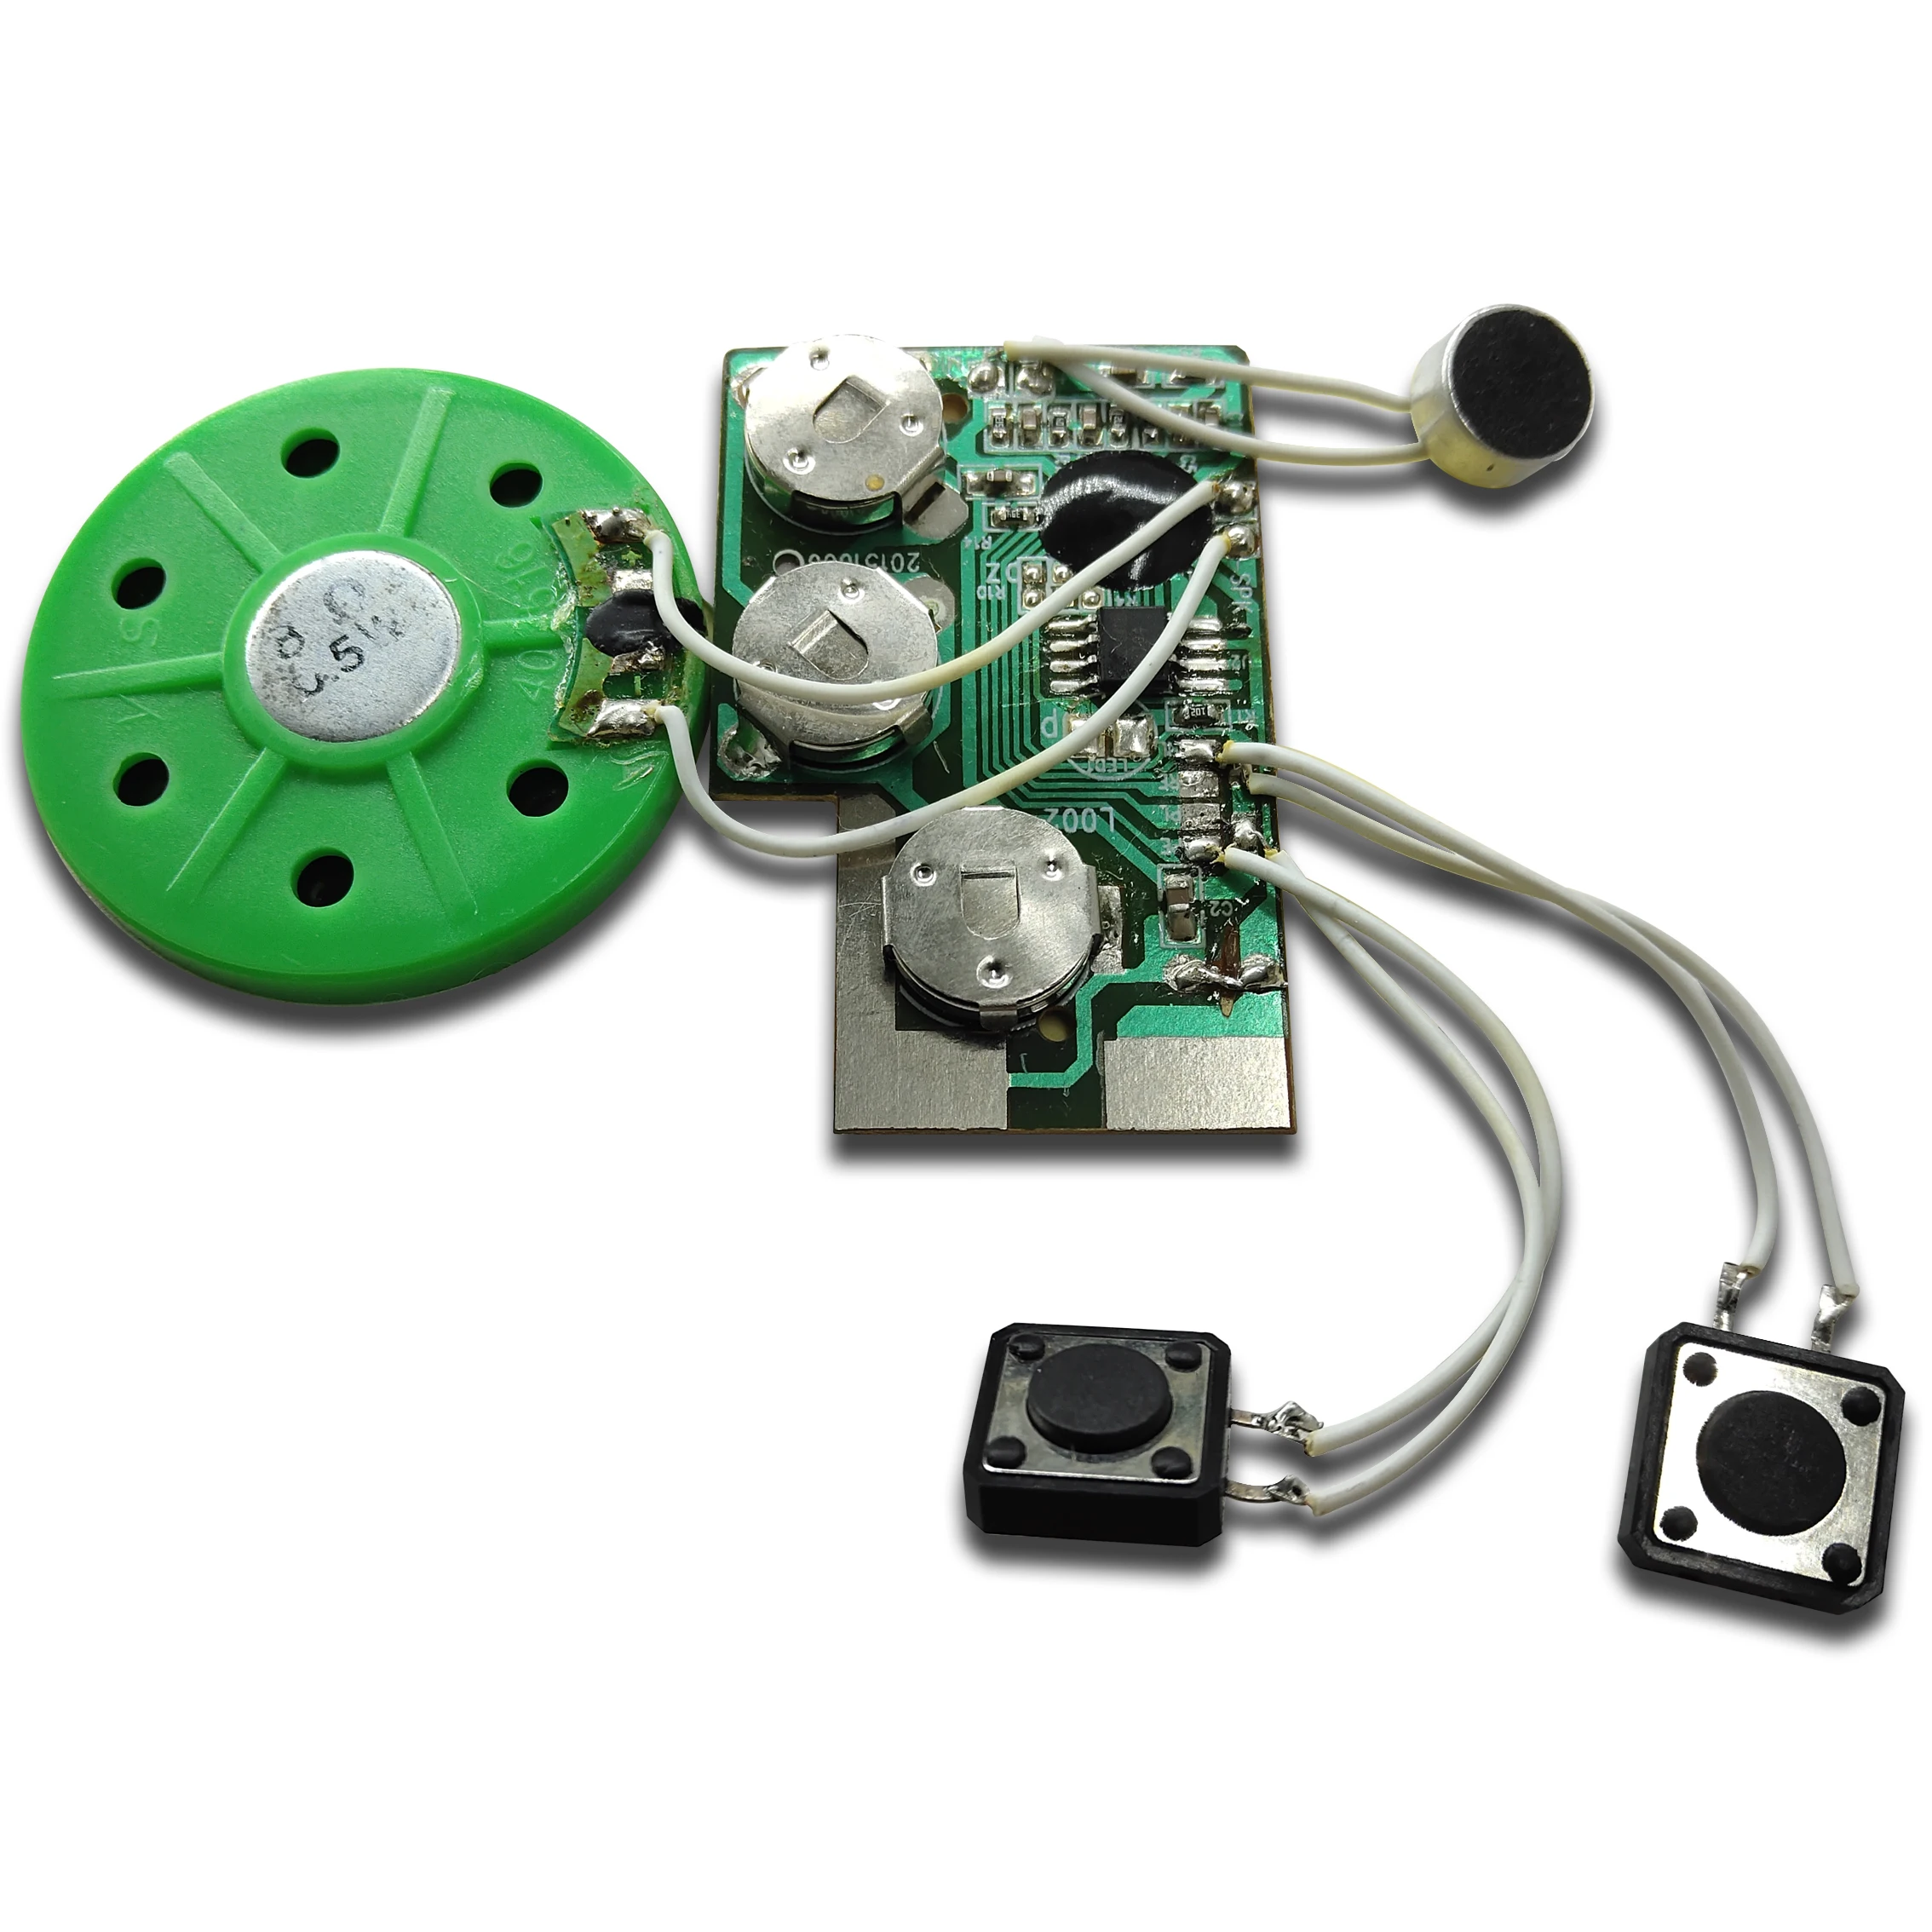 Chip Perekam Suara Mini Modul Suara Berbicara Dengan Minimal Pesanan 20 Detik Dan Perekam Suara Untuk Mainan Buy Mini Perekam Suara Chip Mini Perekam Suara Chip Untuk Mainan Recordable Berbicara Modul Suara Mini